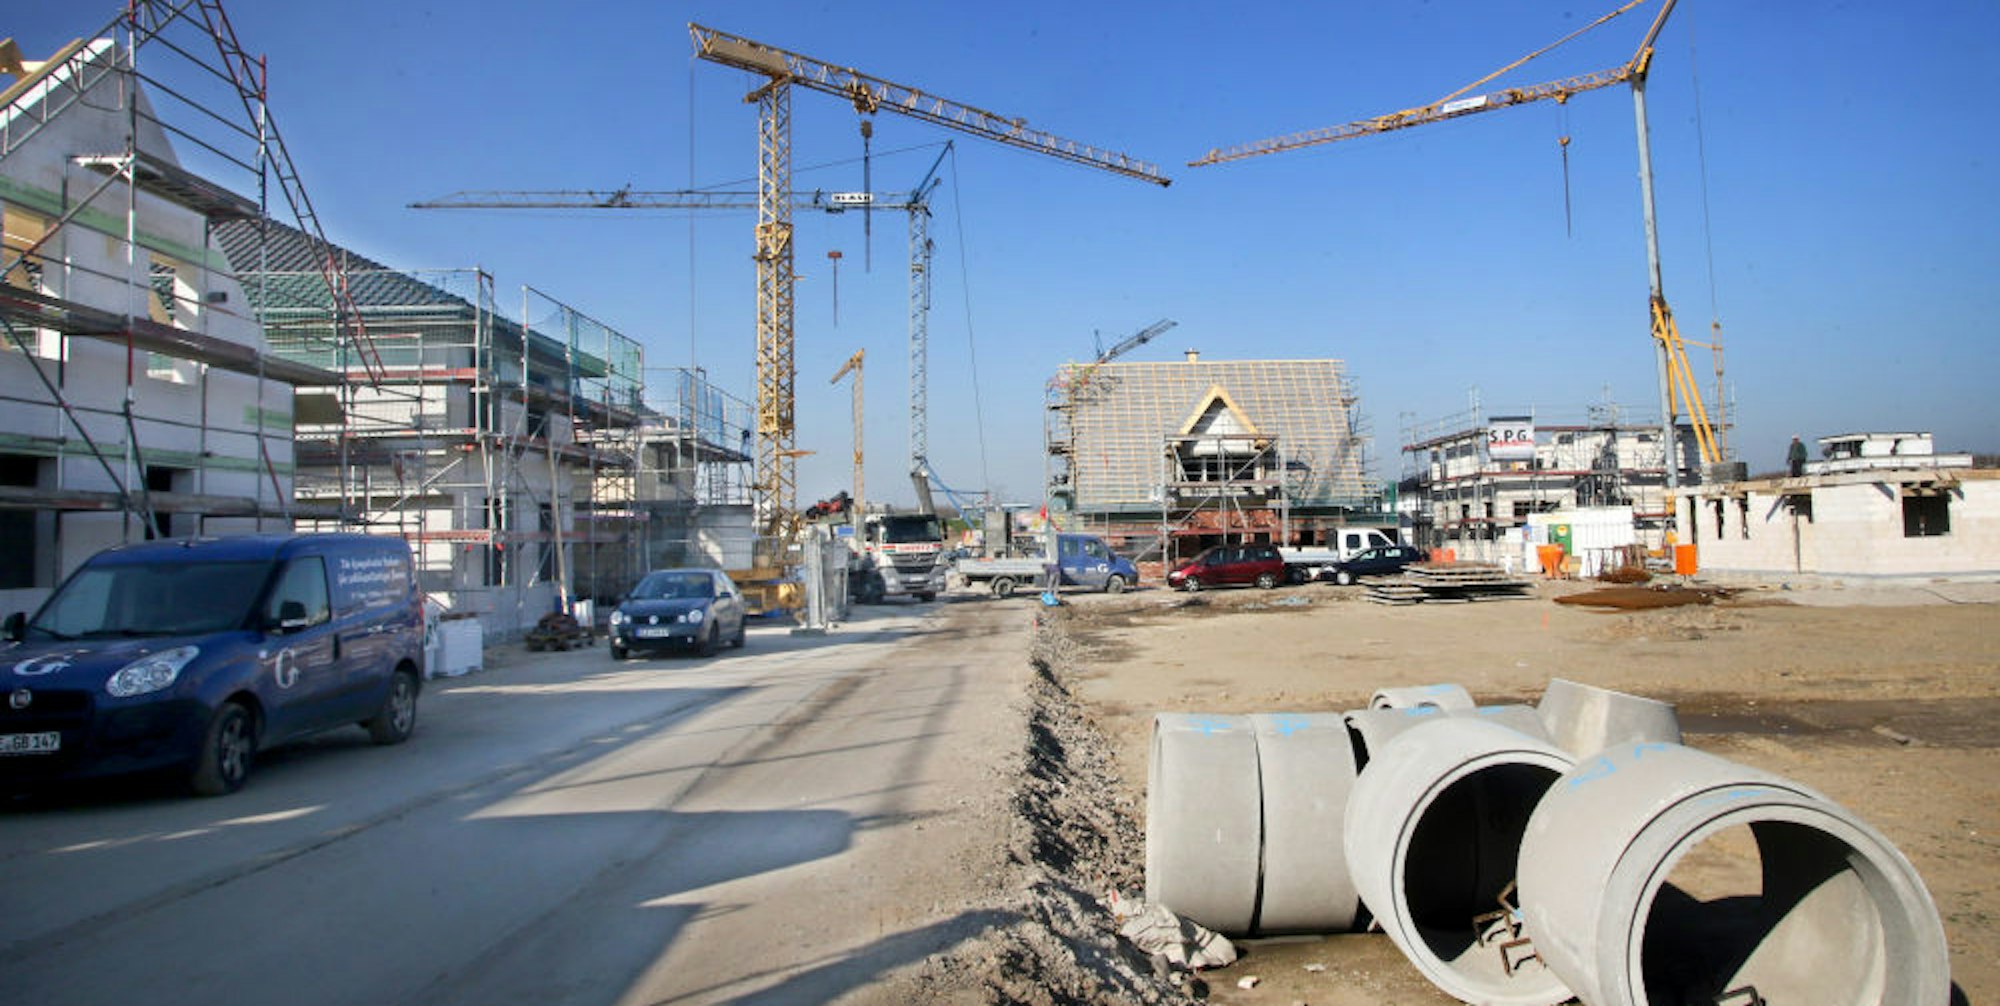 „Kooperative Baulandentwicklung“ heißt das Landesprogramm, von dem die Gemeinde profitieren möchte. (Symbolfoto)